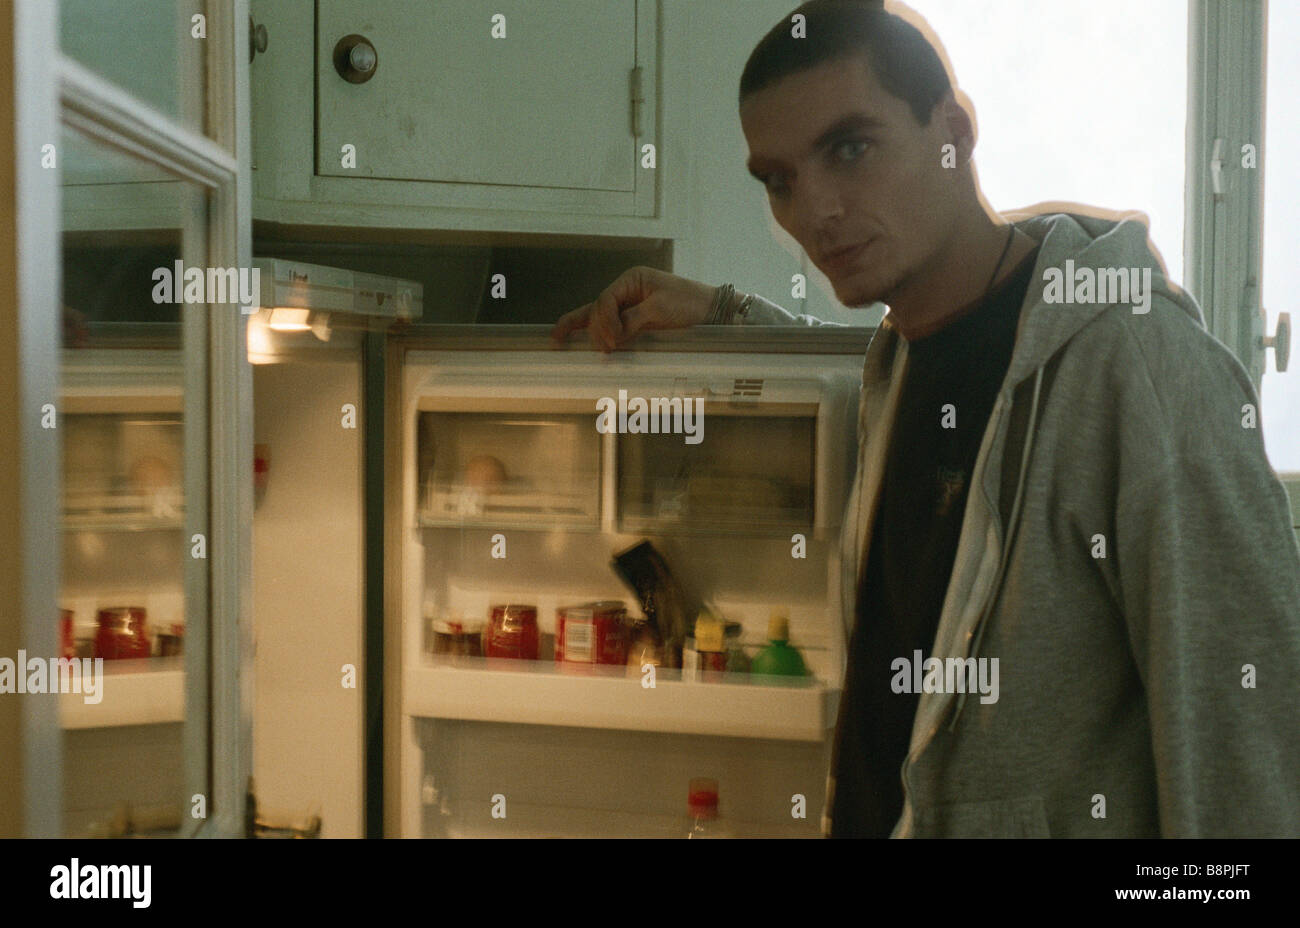 Jeune homme debout devant ouvrir réfrigérateur, looking at camera Banque D'Images